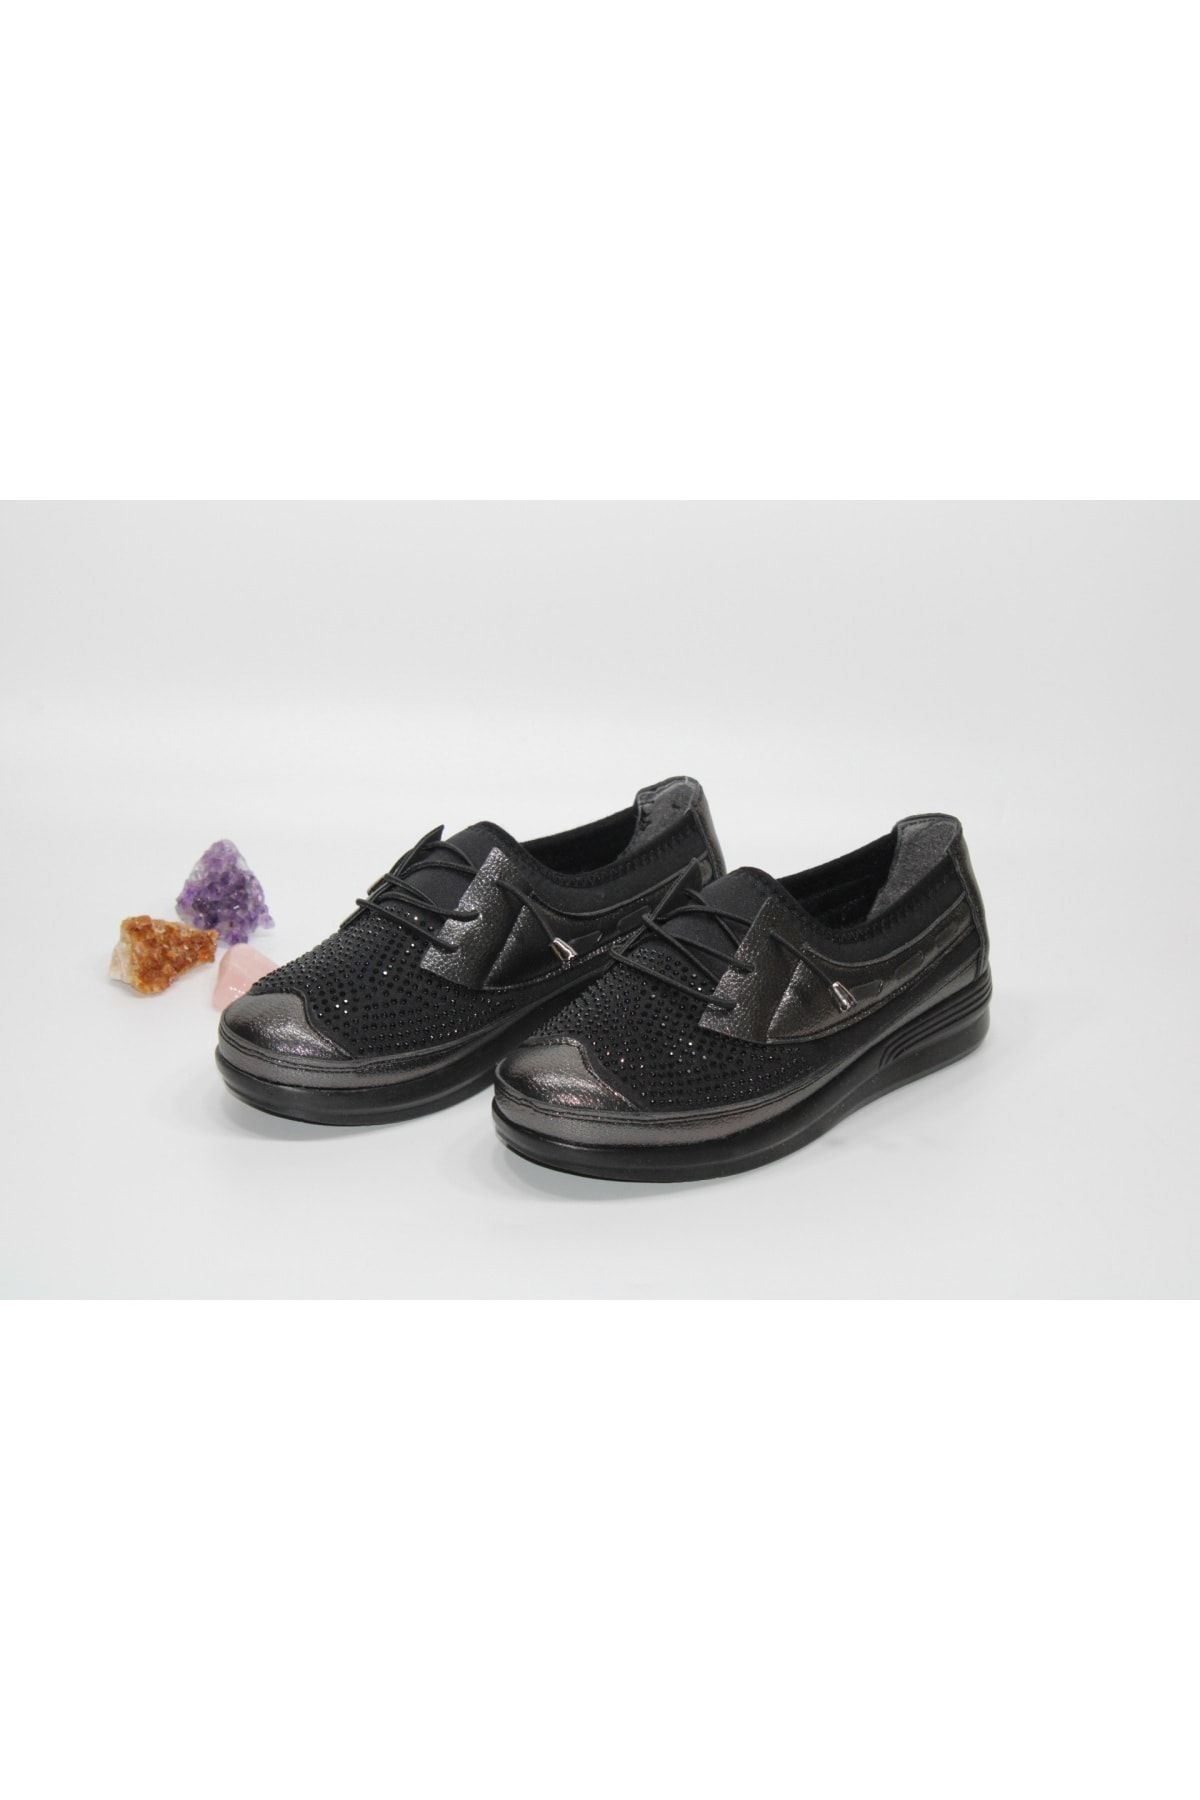 Barbour Kadın Siyah Günlük Taşlı Streç Lastik Bağcık Desenli Bağsız Yürüyüş Ayakkabısı